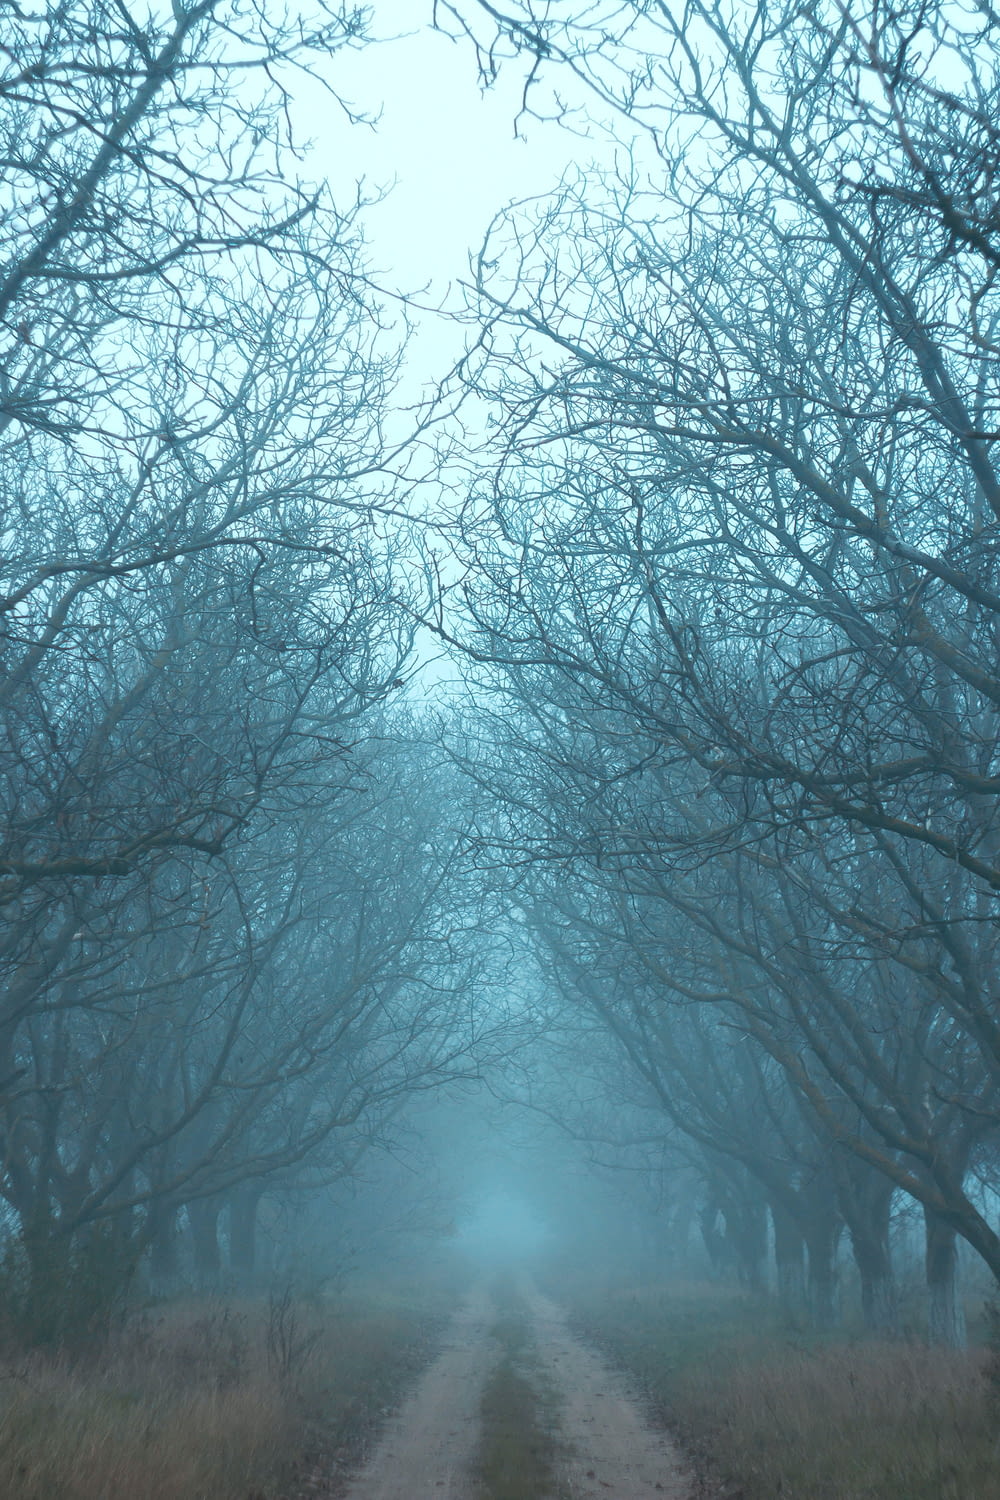 Una strada sterrata circondata da alberi in una giornata nebbiosa